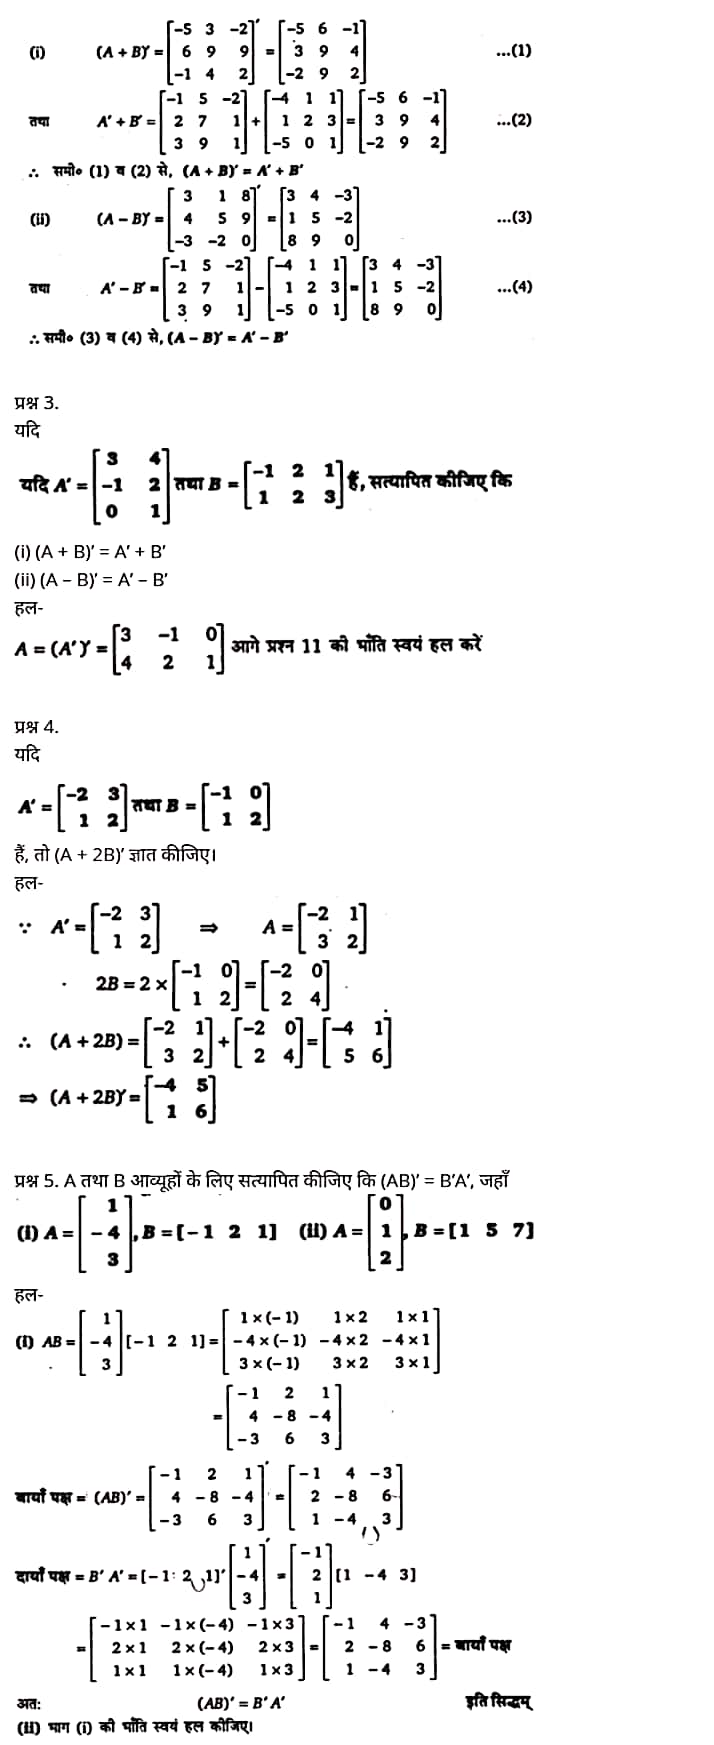 Class 12 Maths Chapter 3,Matrices, Hindi Medium,  मैथ्स कक्षा 12 नोट्स pdf,  मैथ्स कक्षा 12 नोट्स 2020 NCERT,  मैथ्स कक्षा 12 PDF,  मैथ्स पुस्तक,  मैथ्स की बुक,  मैथ्स प्रश्नोत्तरी Class 12, 12 वीं मैथ्स पुस्तक RBSE,  बिहार बोर्ड 12 वीं मैथ्स नोट्स,   12th Maths book in hindi, 12th Maths notes in hindi, cbse books for class 12, cbse books in hindi, cbse ncert books, class 12 Maths notes in hindi,  class 12 hindi ncert solutions, Maths 2020, Maths 2021, Maths 2022, Maths book class 12, Maths book in hindi, Maths class 12 in hindi, Maths notes for class 12 up board in hindi, ncert all books, ncert app in hindi, ncert book solution, ncert books class 10, ncert books class 12, ncert books for class 7, ncert books for upsc in hindi, ncert books in hindi class 10, ncert books in hindi for class 12 Maths, ncert books in hindi for class 6, ncert books in hindi pdf, ncert class 12 hindi book, ncert english book, ncert Maths book in hindi, ncert Maths books in hindi pdf, ncert Maths class 12, ncert in hindi,  old ncert books in hindi, online ncert books in hindi,  up board 12th, up board 12th syllabus, up board class 10 hindi book, up board class 12 books, up board class 12 new syllabus, up Board Maths 2020, up Board Maths 2021, up Board Maths 2022, up Board Maths 2023, up board intermediate Maths syllabus, up board intermediate syllabus 2021, Up board Master 2021, up board model paper 2021, up board model paper all subject, up board new syllabus of class 12th Maths, up board paper 2021, Up board syllabus 2021, UP board syllabus 2022,  12 veen maiths buk hindee mein, 12 veen maiths nots hindee mein, seebeeesasee kitaaben 12 ke lie, seebeeesasee kitaaben hindee mein, seebeeesasee enaseeaaratee kitaaben, klaas 12 maiths nots in hindee, klaas 12 hindee enaseeteeaar solyooshans, maiths 2020, maiths 2021, maiths 2022, maiths buk klaas 12, maiths buk in hindee, maiths klaas 12 hindee mein, maiths nots phor klaas 12 ap bord in hindee, nchairt all books, nchairt app in hindi, nchairt book solution, nchairt books klaas 10, nchairt books klaas 12, nchairt books kaksha 7 ke lie, nchairt books for hindi mein hindee mein, nchairt books in hindi kaksha 10, nchairt books in hindi ke lie kaksha 12 ganit, nchairt kitaaben hindee mein kaksha 6 ke lie, nchairt pustaken hindee mein, nchairt books 12 hindee pustak, nchairt angrejee pustak mein , nchairt maths book in hindi, nchairt maths books in hindi pdf, nchairt maths chlass 12, nchairt in hindi, puraanee nchairt books in hindi, onalain nchairt books in hindi, bord 12 veen, up bord 12 veen ka silebas, up bord klaas 10 hindee kee pustak , bord kee kaksha 12 kee kitaaben, bord kee kaksha 12 kee naee paathyakram, bord kee ganit 2020, bord kee ganit 2021, ganit kee padhaee s 2022, up bord maiths 2023, up bord intarameediet maiths silebas, up bord intarameediet silebas 2021, up bord maastar 2021, up bord modal pepar 2021, up bord modal pepar sabhee vishay, up bord nyoo klaasiks oph klaas 12 veen maiths, up bord pepar 2021, up bord paathyakram 2021, yoopee bord paathyakram 2022,  12 वीं मैथ्स पुस्तक हिंदी में, 12 वीं मैथ्स नोट्स हिंदी में, कक्षा 12 के लिए सीबीएससी पुस्तकें, हिंदी में सीबीएससी पुस्तकें, सीबीएससी  पुस्तकें, कक्षा 12 मैथ्स नोट्स हिंदी में, कक्षा 12 हिंदी एनसीईआरटी समाधान, मैथ्स 2020, मैथ्स 2021, मैथ्स 2022, मैथ्स  बुक क्लास 12, मैथ्स बुक इन हिंदी, बायोलॉजी क्लास 12 हिंदी में, मैथ्स नोट्स इन क्लास 12 यूपी  बोर्ड इन हिंदी, एनसीईआरटी मैथ्स की किताब हिंदी में,  बोर्ड 12 वीं तक, 12 वीं तक की पाठ्यक्रम, बोर्ड कक्षा 10 की हिंदी पुस्तक  , बोर्ड की कक्षा 12 की किताबें, बोर्ड की कक्षा 12 की नई पाठ्यक्रम, बोर्ड मैथ्स 2020, यूपी   बोर्ड मैथ्स 2021, यूपी  बोर्ड मैथ्स 2022, यूपी  बोर्ड मैथ्स 2023, यूपी  बोर्ड इंटरमीडिएट बायोलॉजी सिलेबस, यूपी  बोर्ड इंटरमीडिएट सिलेबस 2021, यूपी  बोर्ड मास्टर 2021, यूपी  बोर्ड मॉडल पेपर 2021, यूपी  मॉडल पेपर सभी विषय, यूपी  बोर्ड न्यू क्लास का सिलेबस  12 वीं मैथ्स, अप बोर्ड पेपर 2021, यूपी बोर्ड सिलेबस 2021, यूपी बोर्ड सिलेबस 2022,